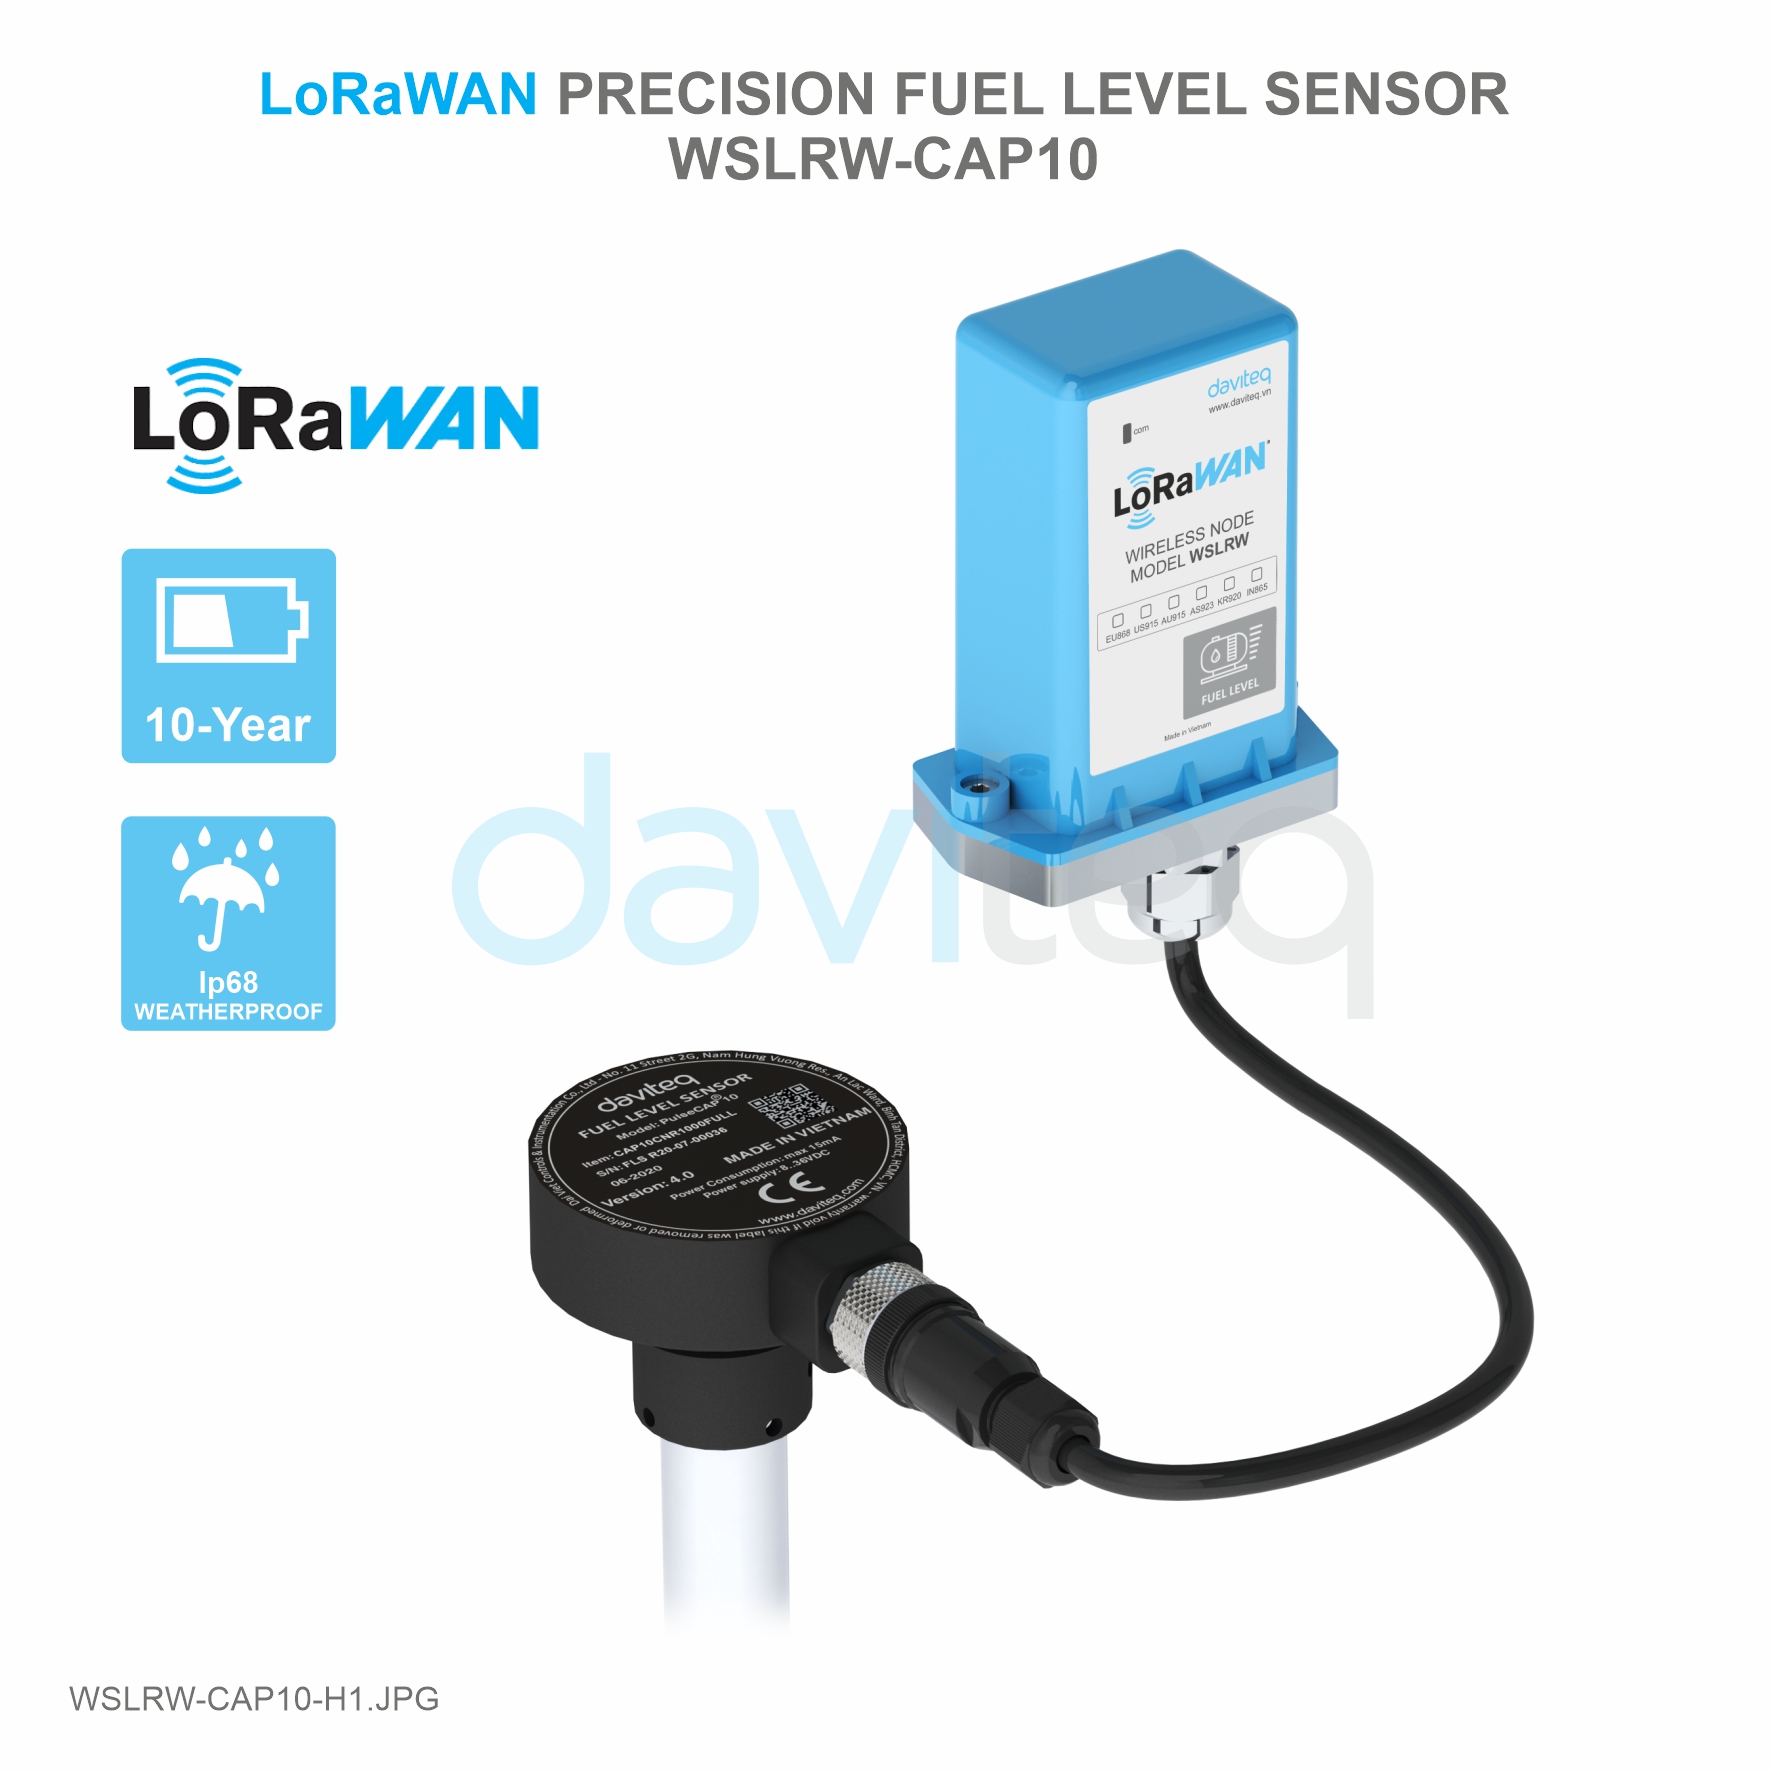 Cảm biến LoRaWAN đo mức nhiên liệu chính xác